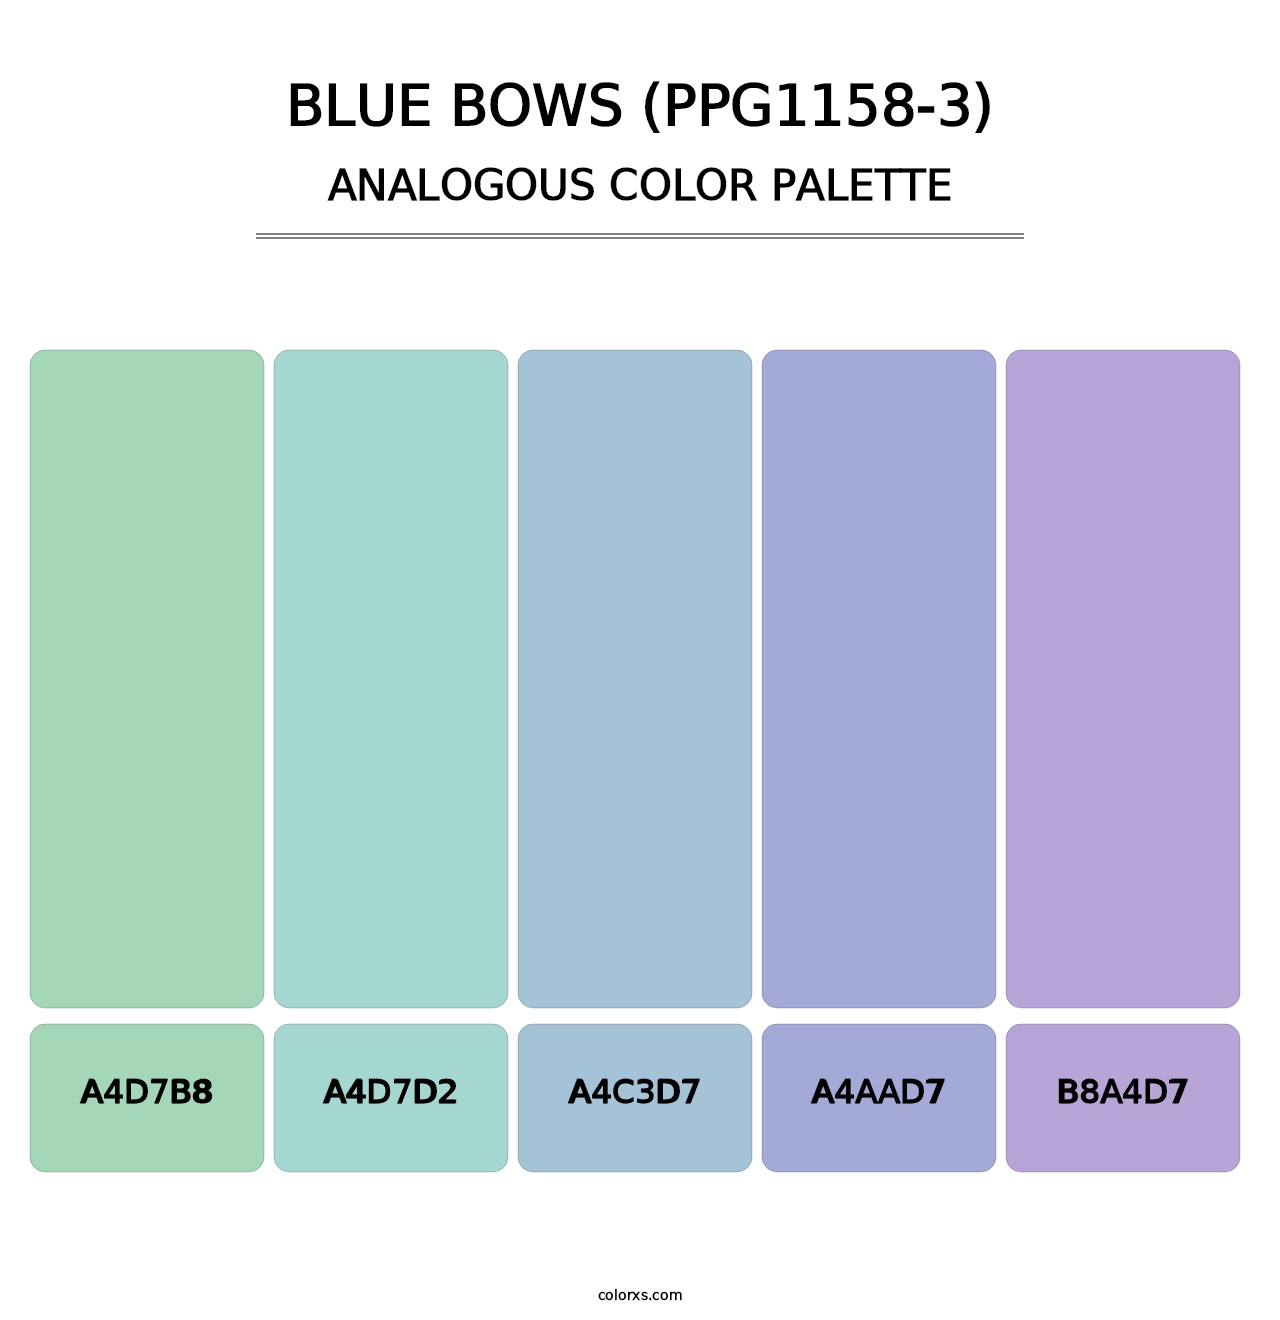 Blue Bows (PPG1158-3) - Analogous Color Palette